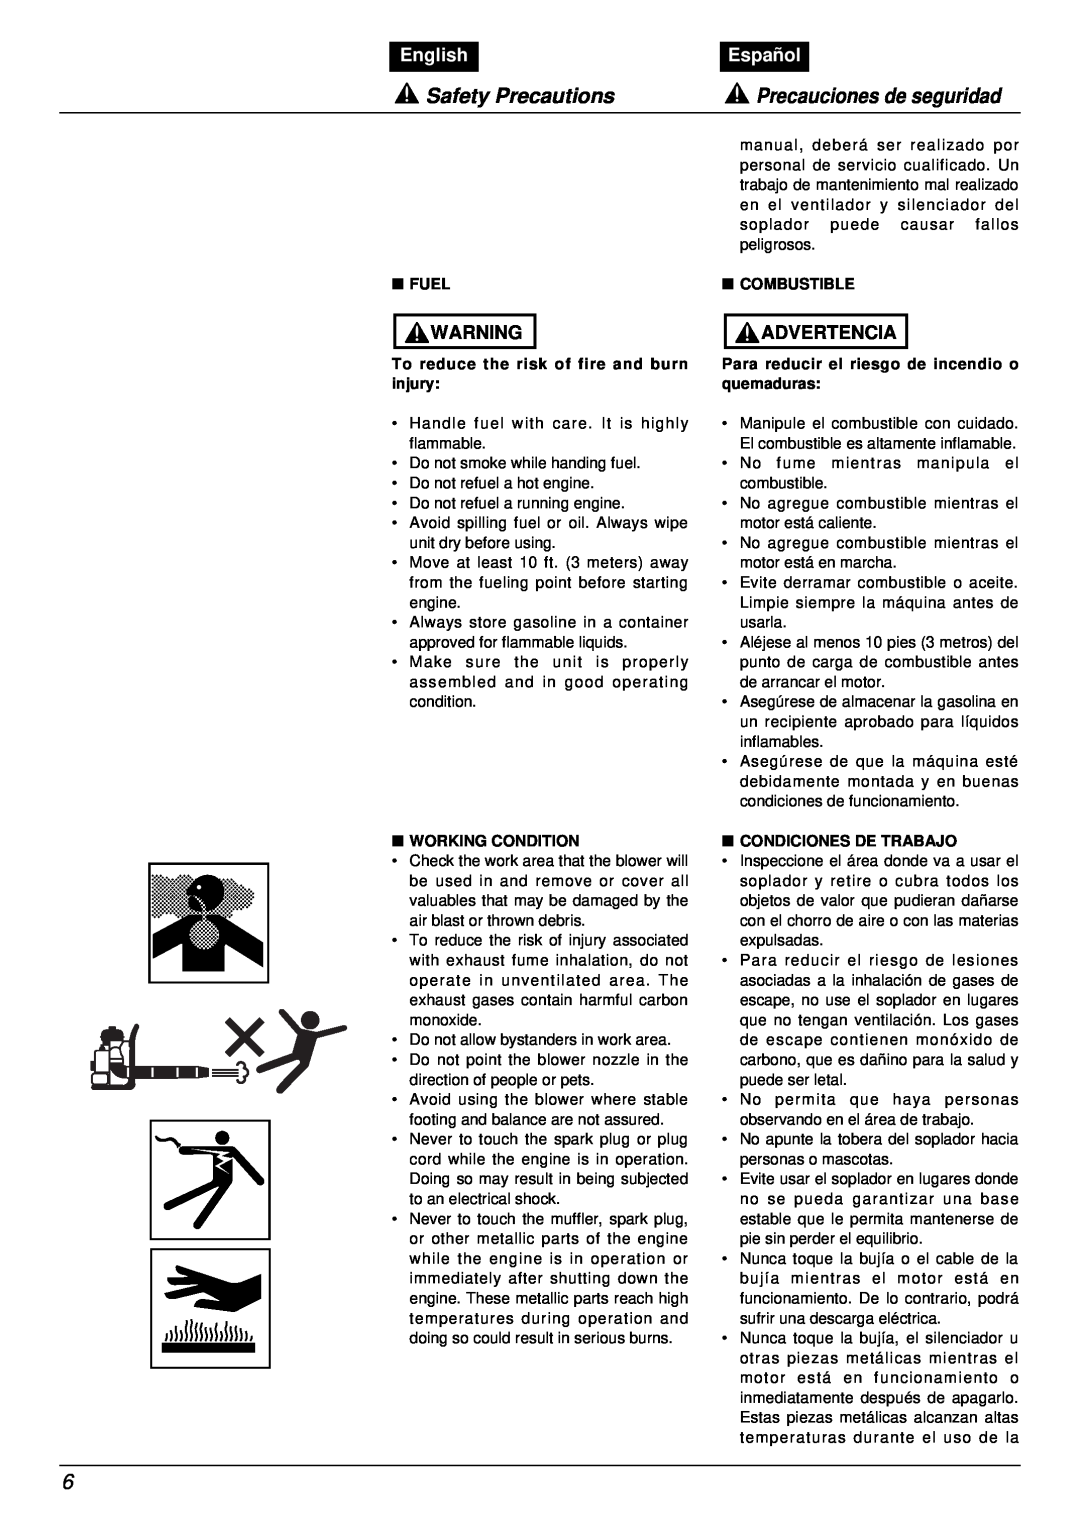 RedMax EB7001RH manual Safety Precautions, Precauciones de seguridad, English, Español, Advertencia 